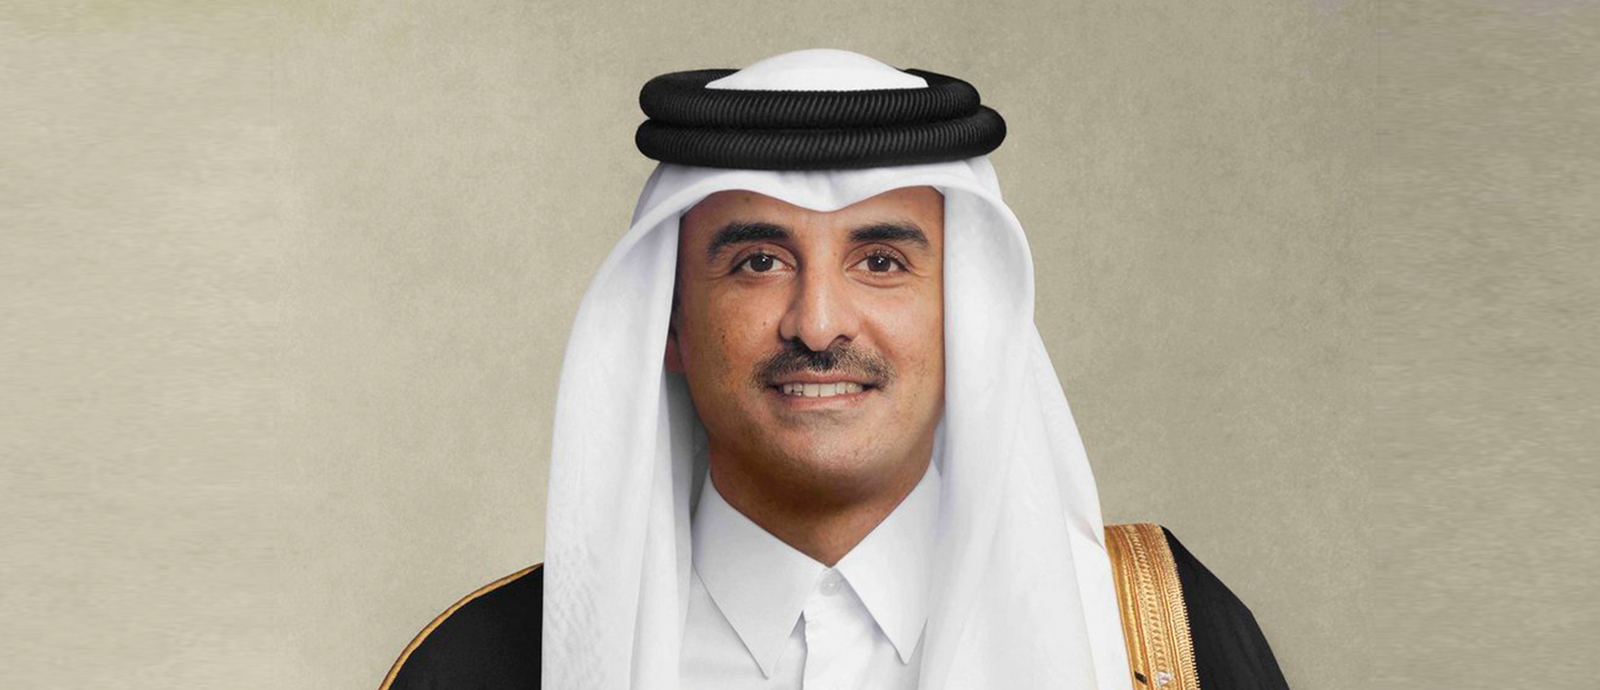 سمو الأمير يهنئ الشعب القطري والمقيمين بمناسبة اليوم الوطني للدولة